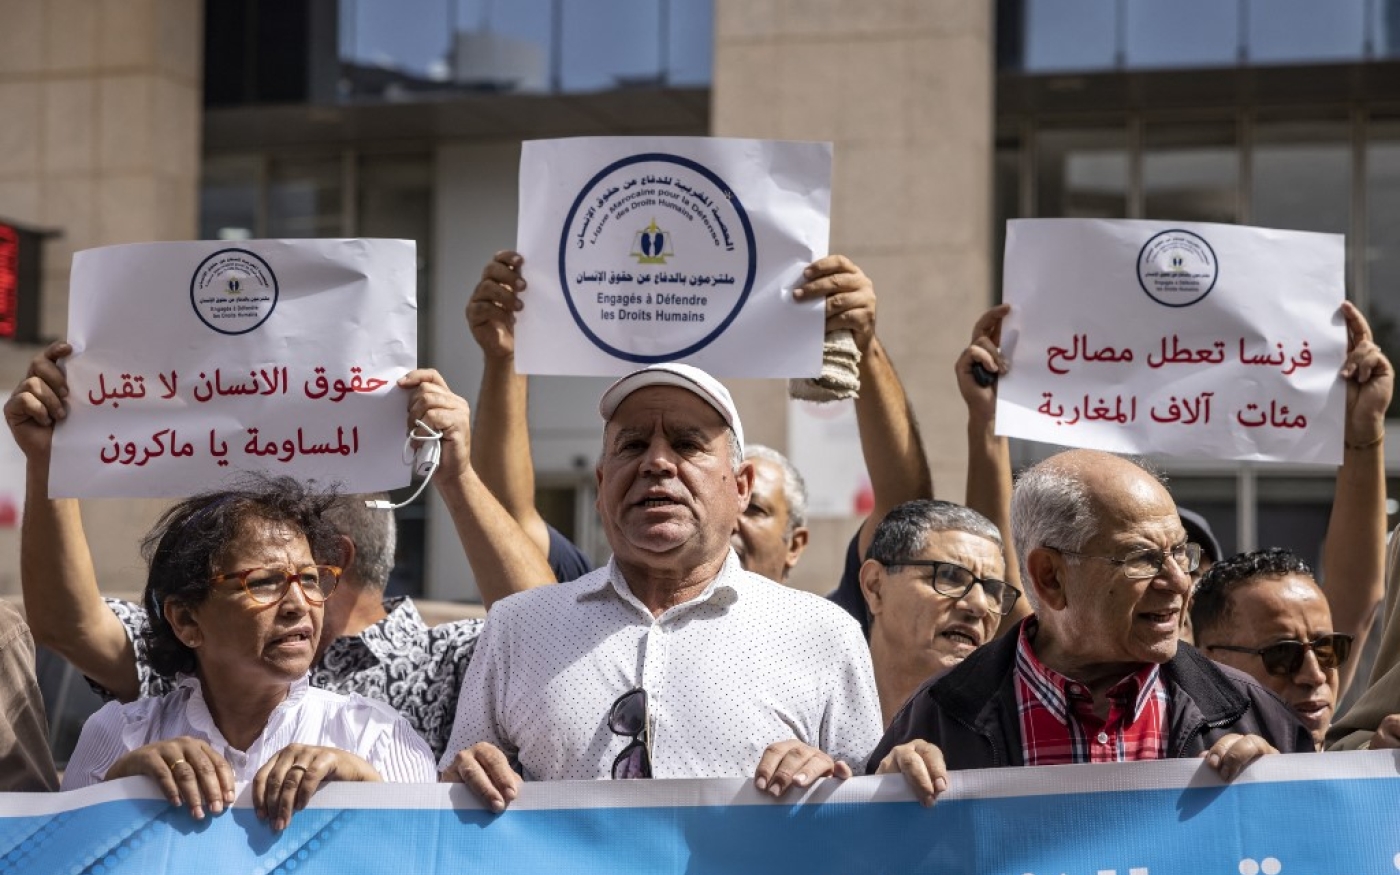 Des militants pour la défense des droits de l’homme manifestent devant les bureaux de l’Union européenne contre la restriction des visas imposée par la France, le 4 octobre 2022 à Rabat (AFP/Fadel Senna)